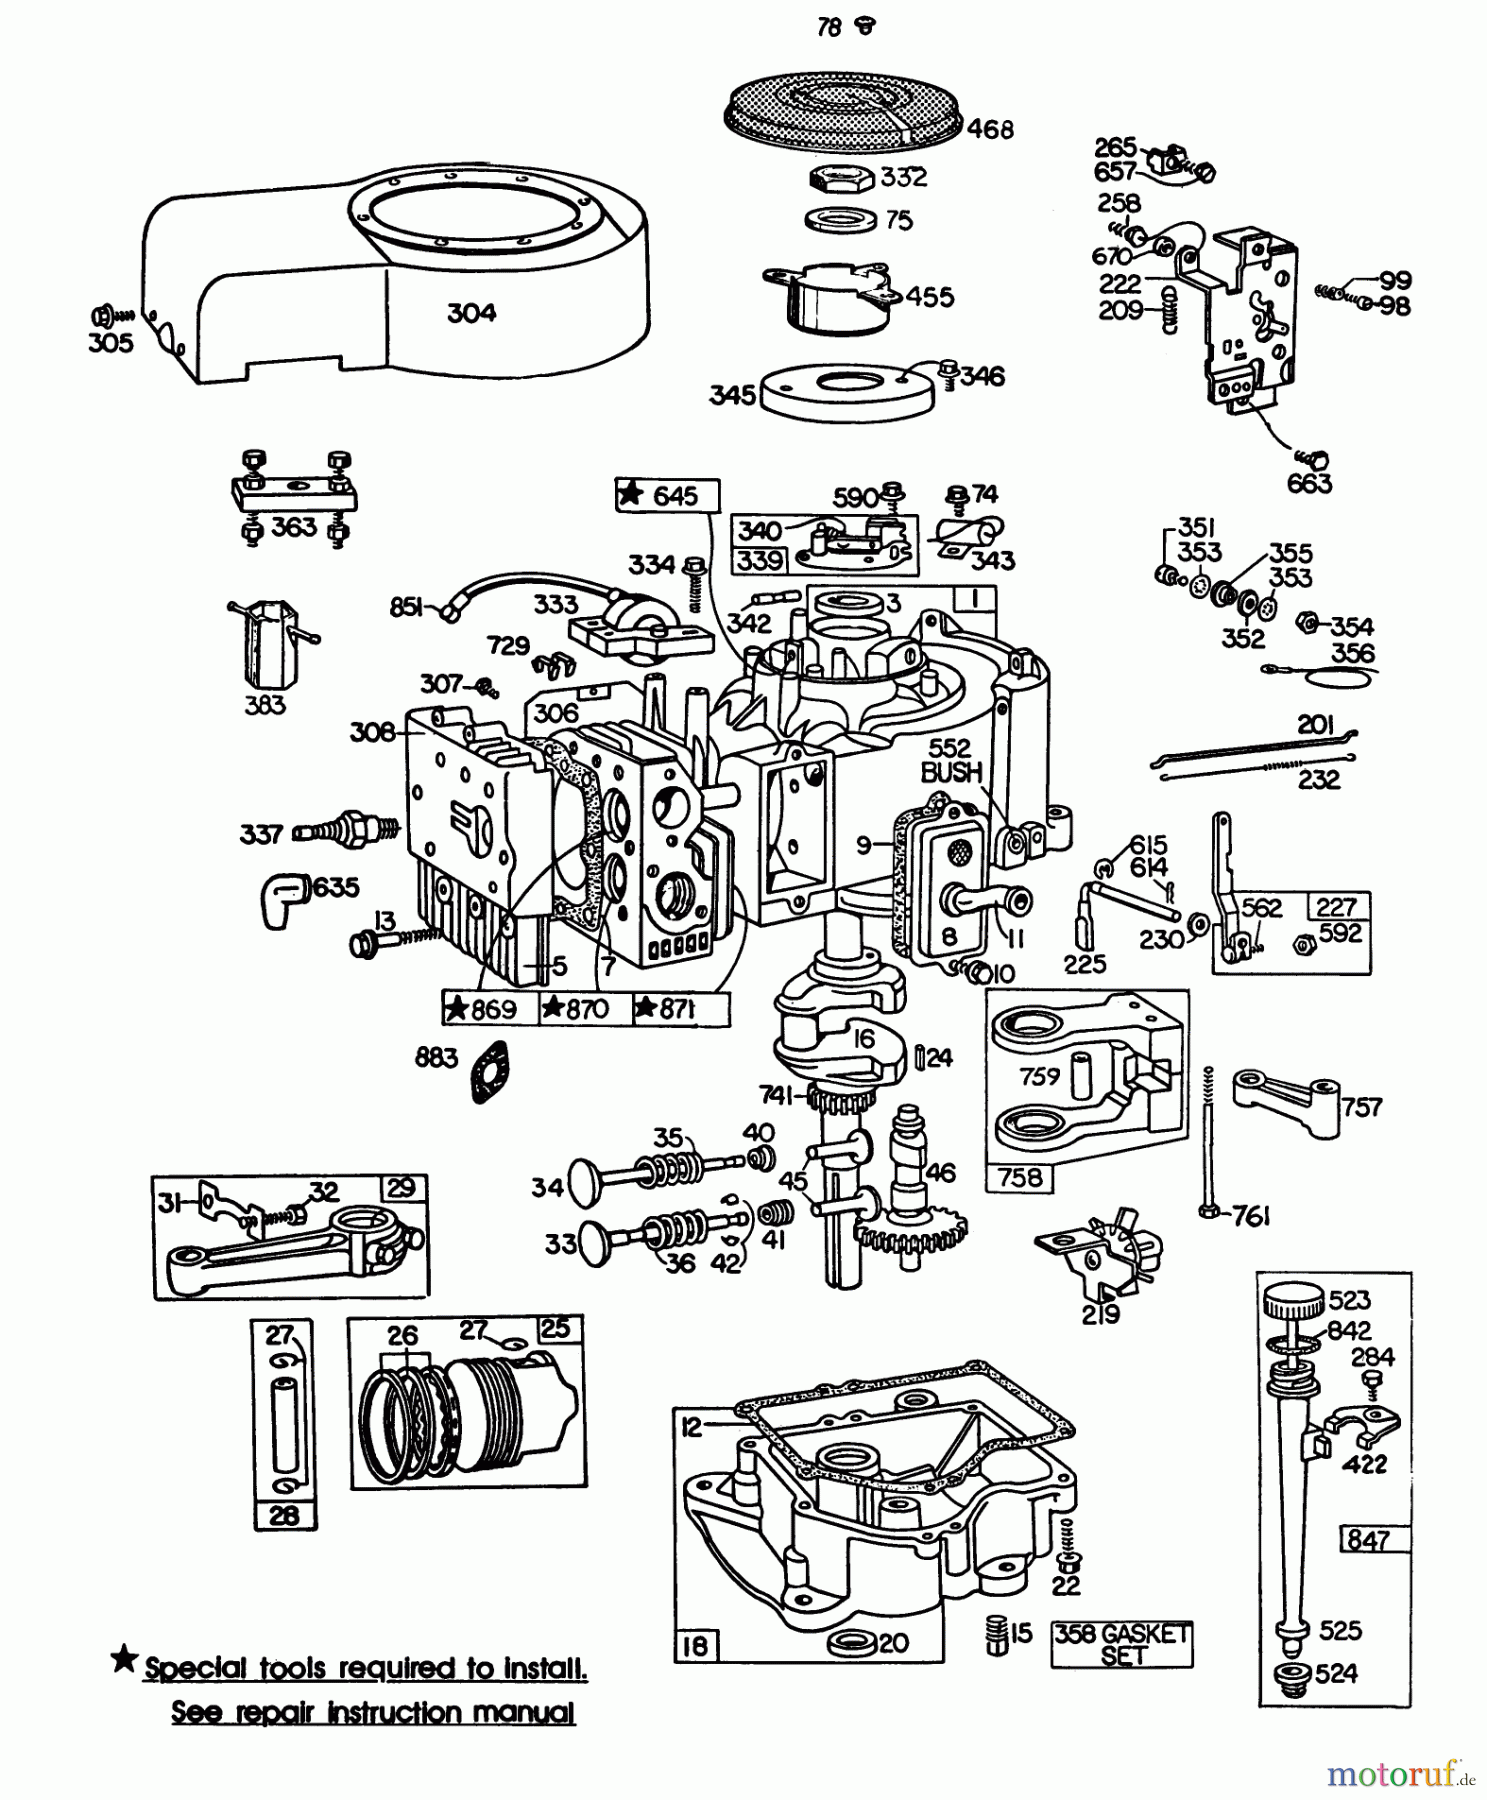  Toro Neu Mowers, Lawn & Garden Tractor Seite 1 57360 (11-32) - Toro 11-32 Lawn Tractor, 1982 (2000001-2999999) ENGINE BRIGGS & STRATTON MODEL 252707-0230-01 (MODEL 57360) #2